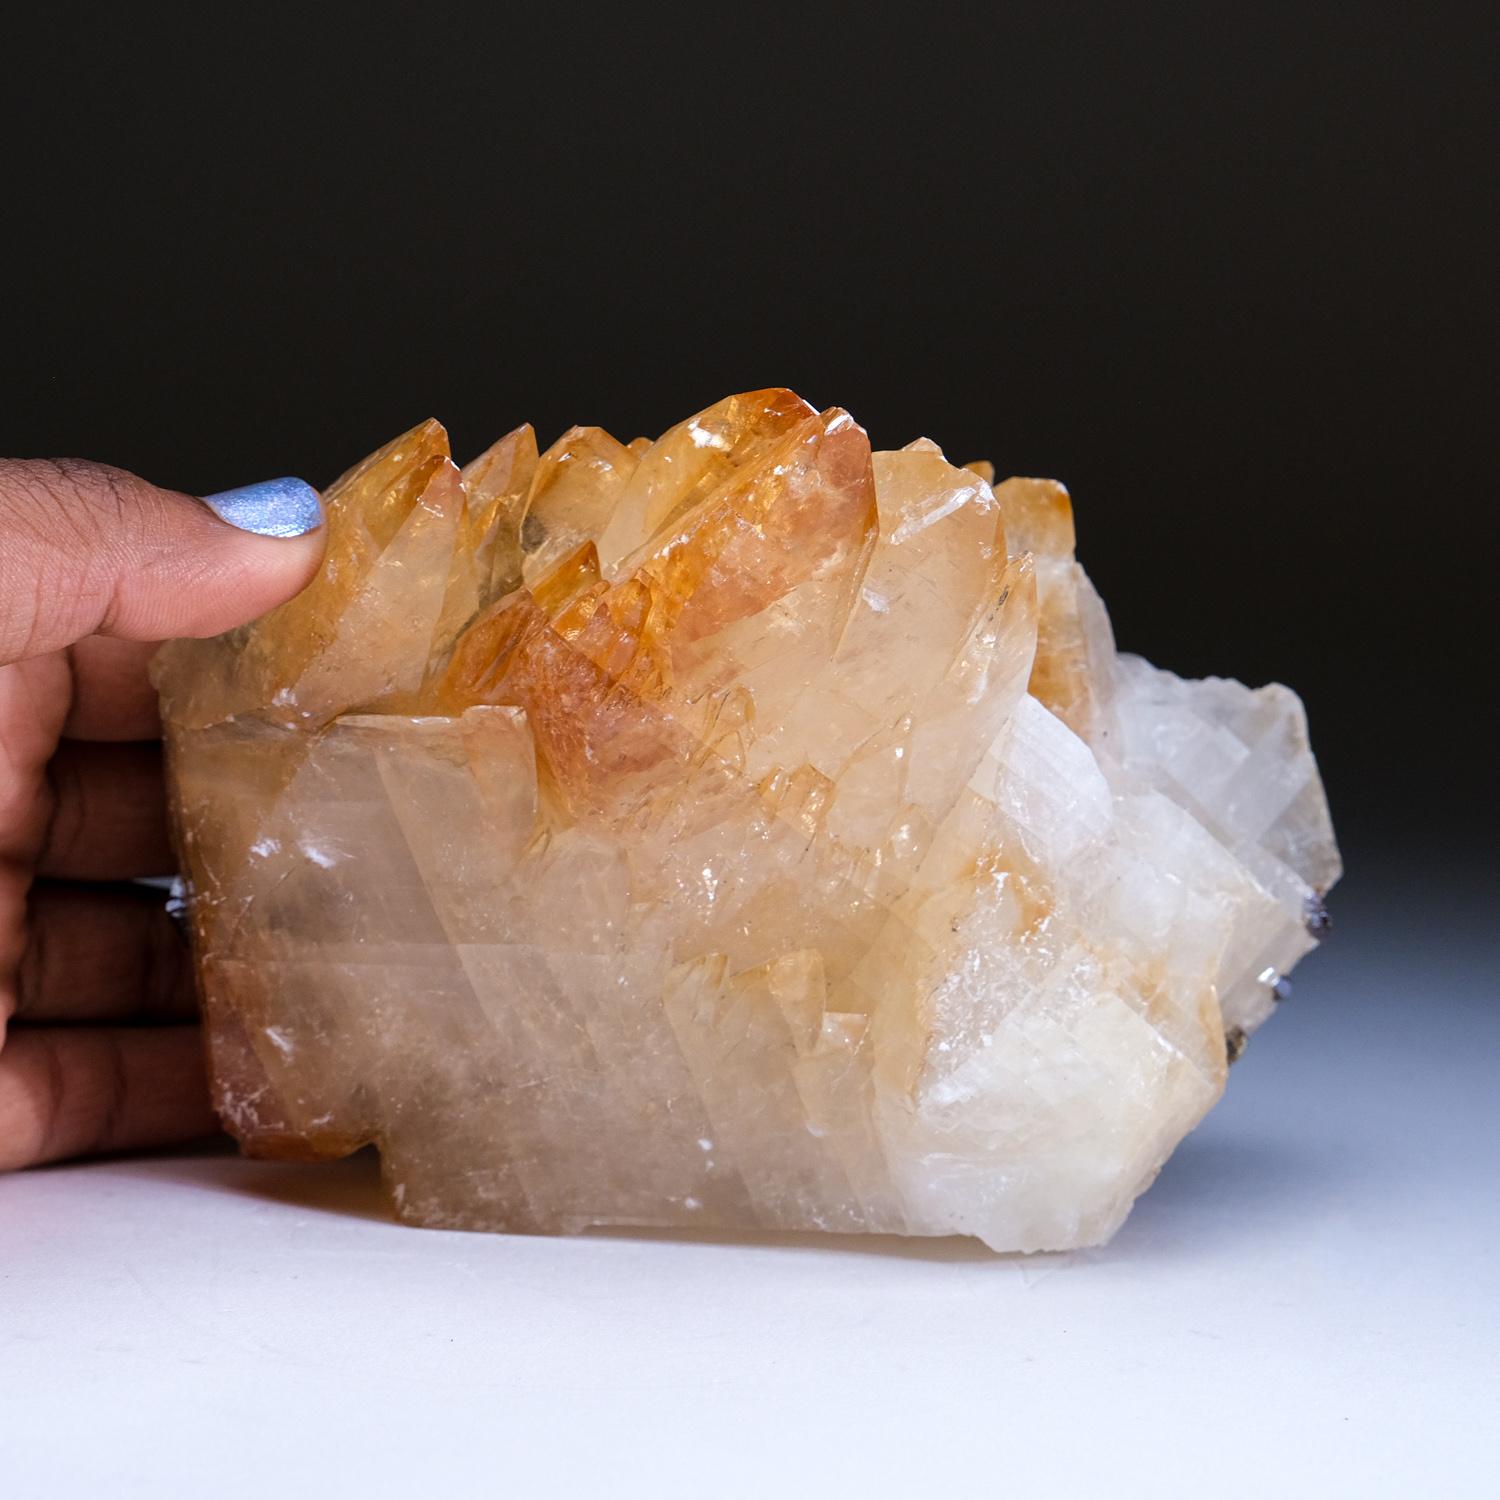 Großer, glänzender, transparenter, tiefgoldener Calcit in Museumsqualität mit einem kleinen Sphaleritkristall an der Basis des Kristalls. Doppelt endständige, auf der C-Achse verzwillingte Skalenoeder mit gut definierten einspringenden Flächen und